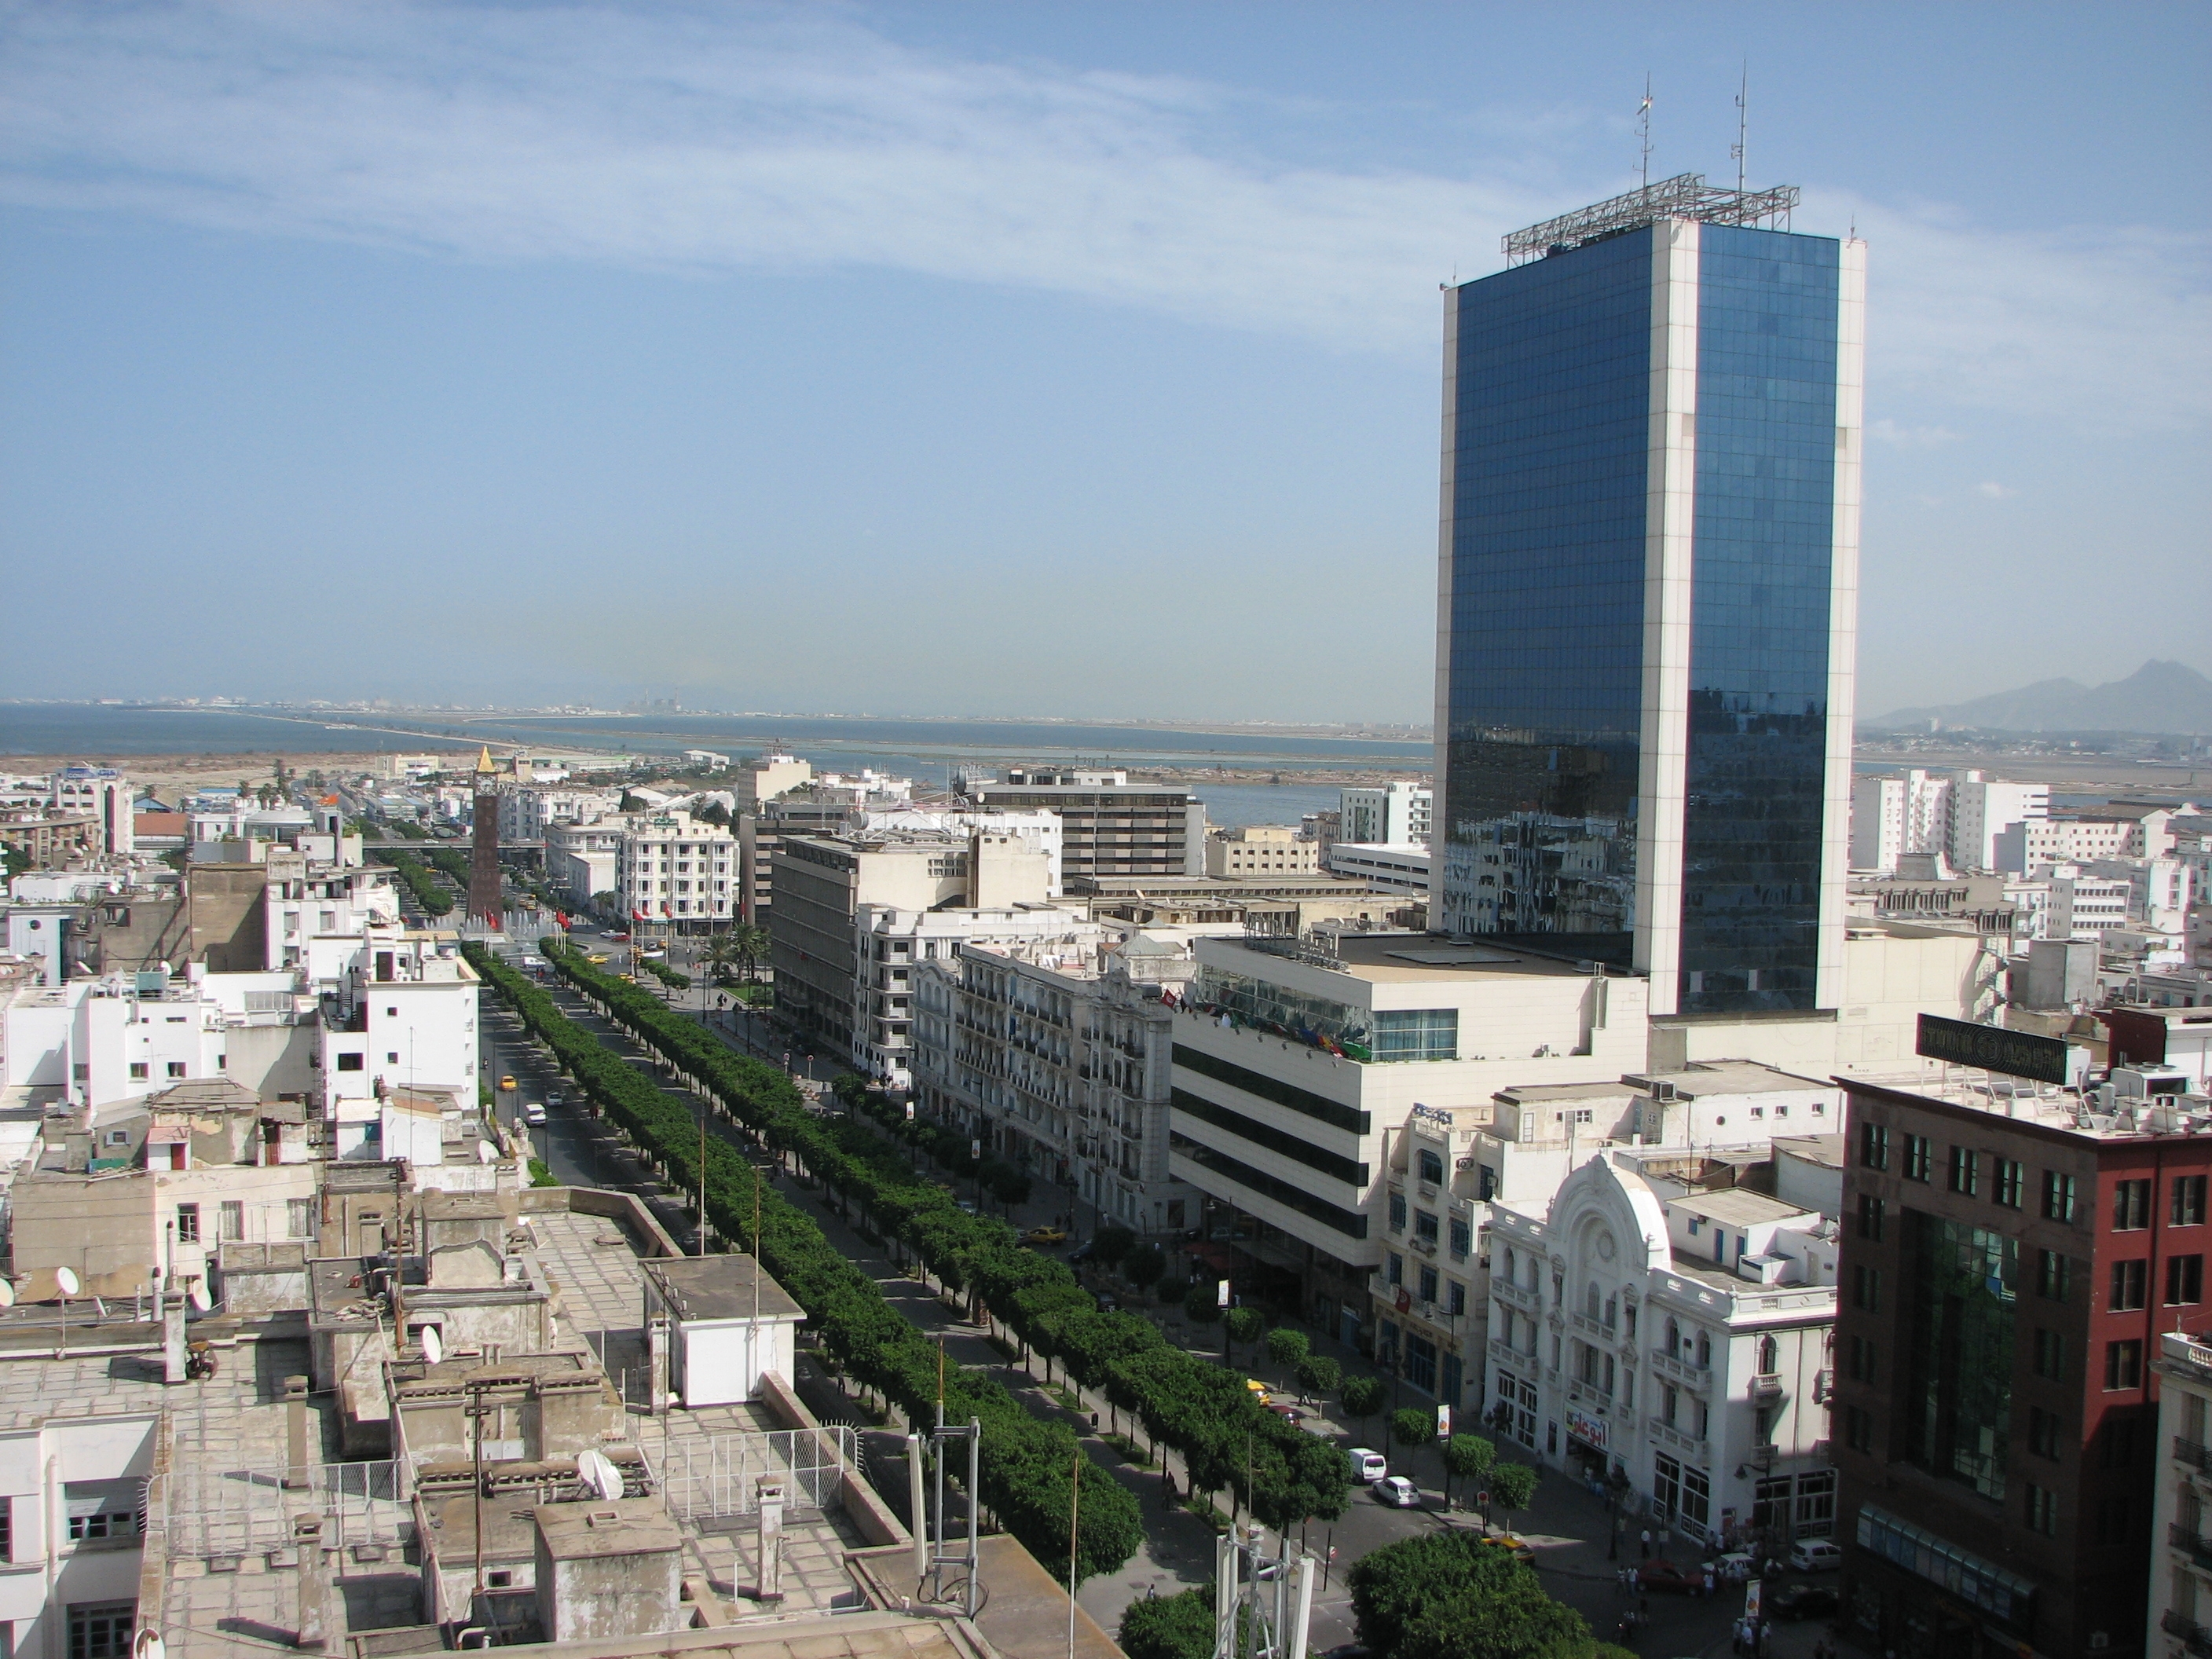 "الأيسيسكو" تختار تونس عاصمة التربية في العالم الإسلامي للعام 2016